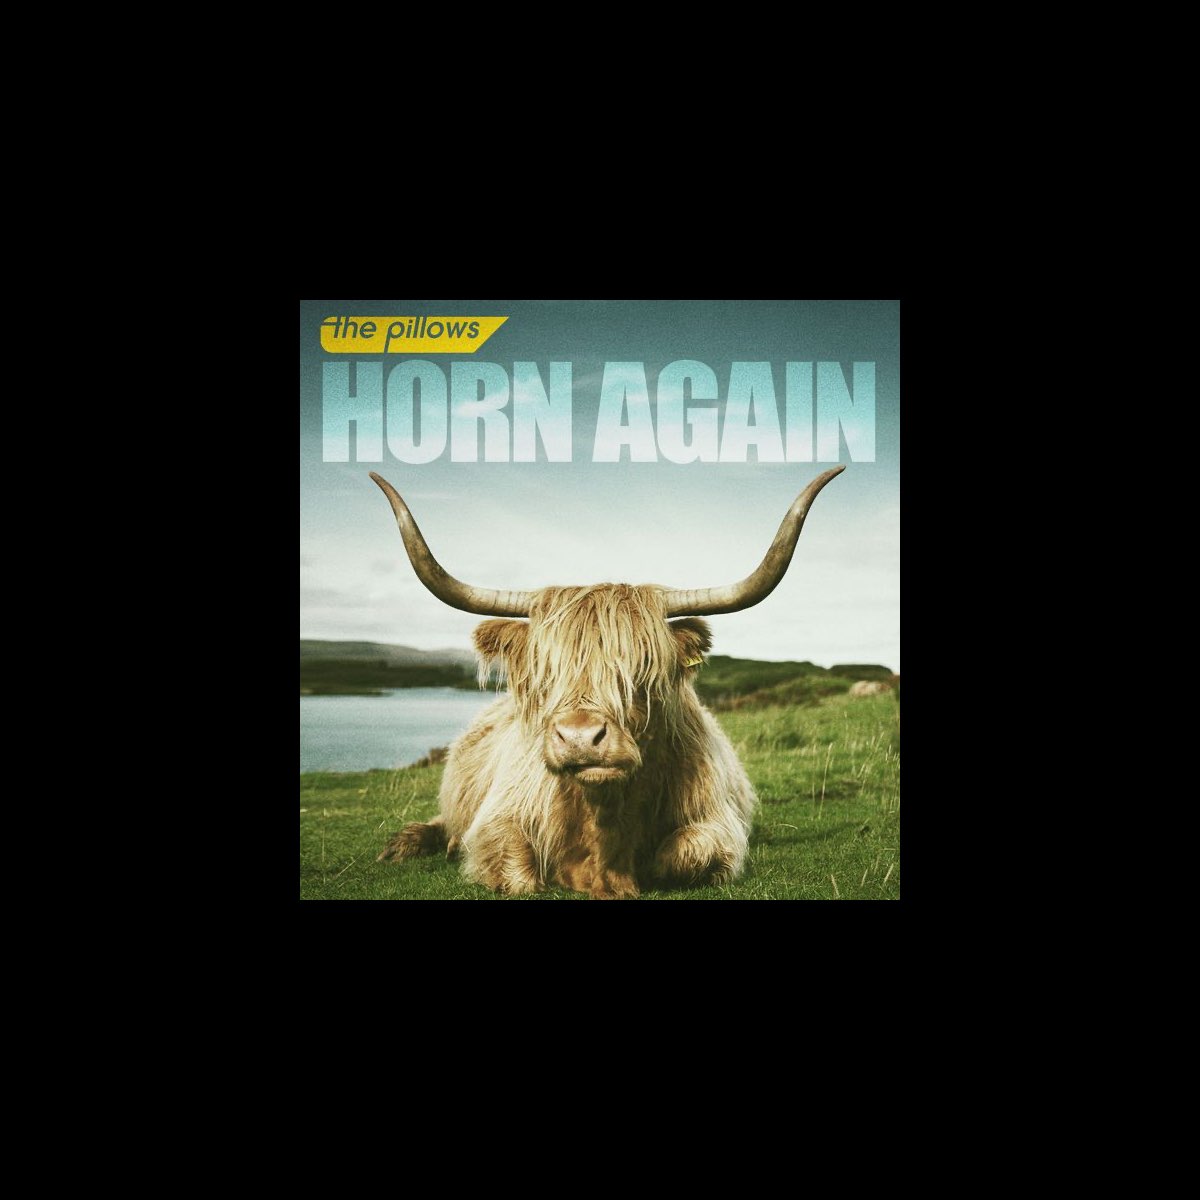 HORN AGAIN - Album by the pillows - Apple Music